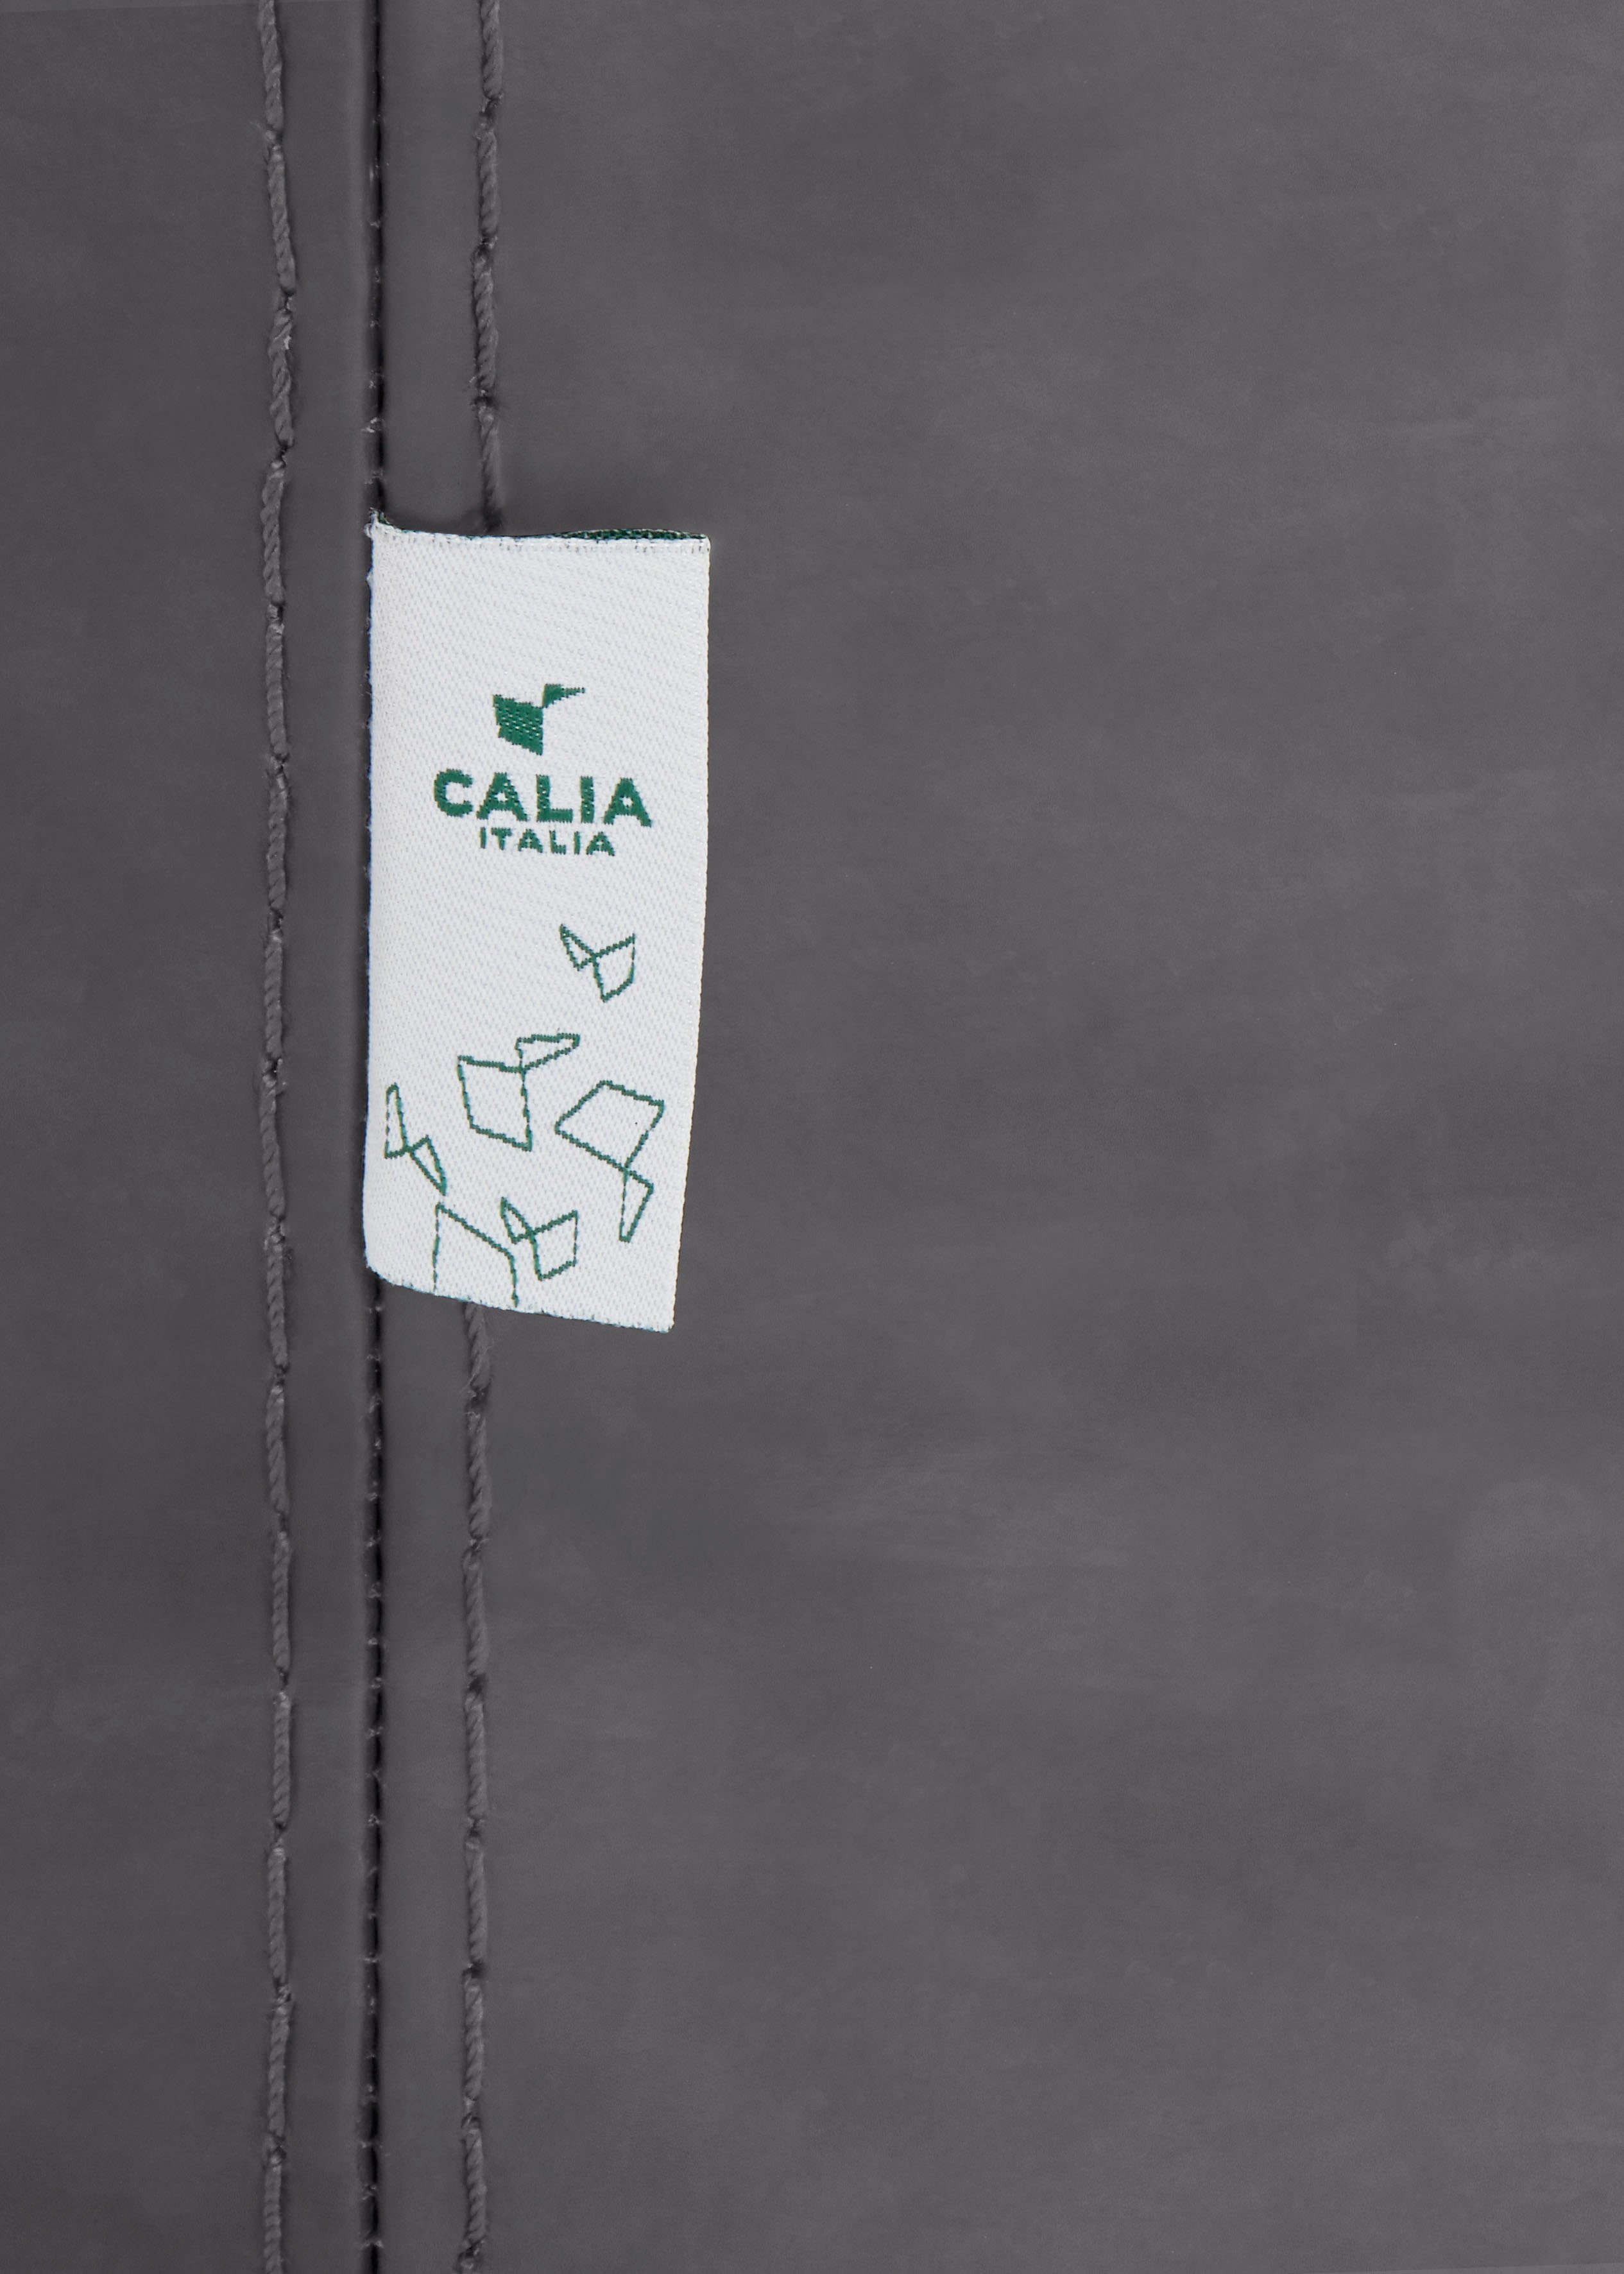 ITALIA Hydro Ginevra Luxus-Microfaser Care Sessel mit Gaia, ash CALIA